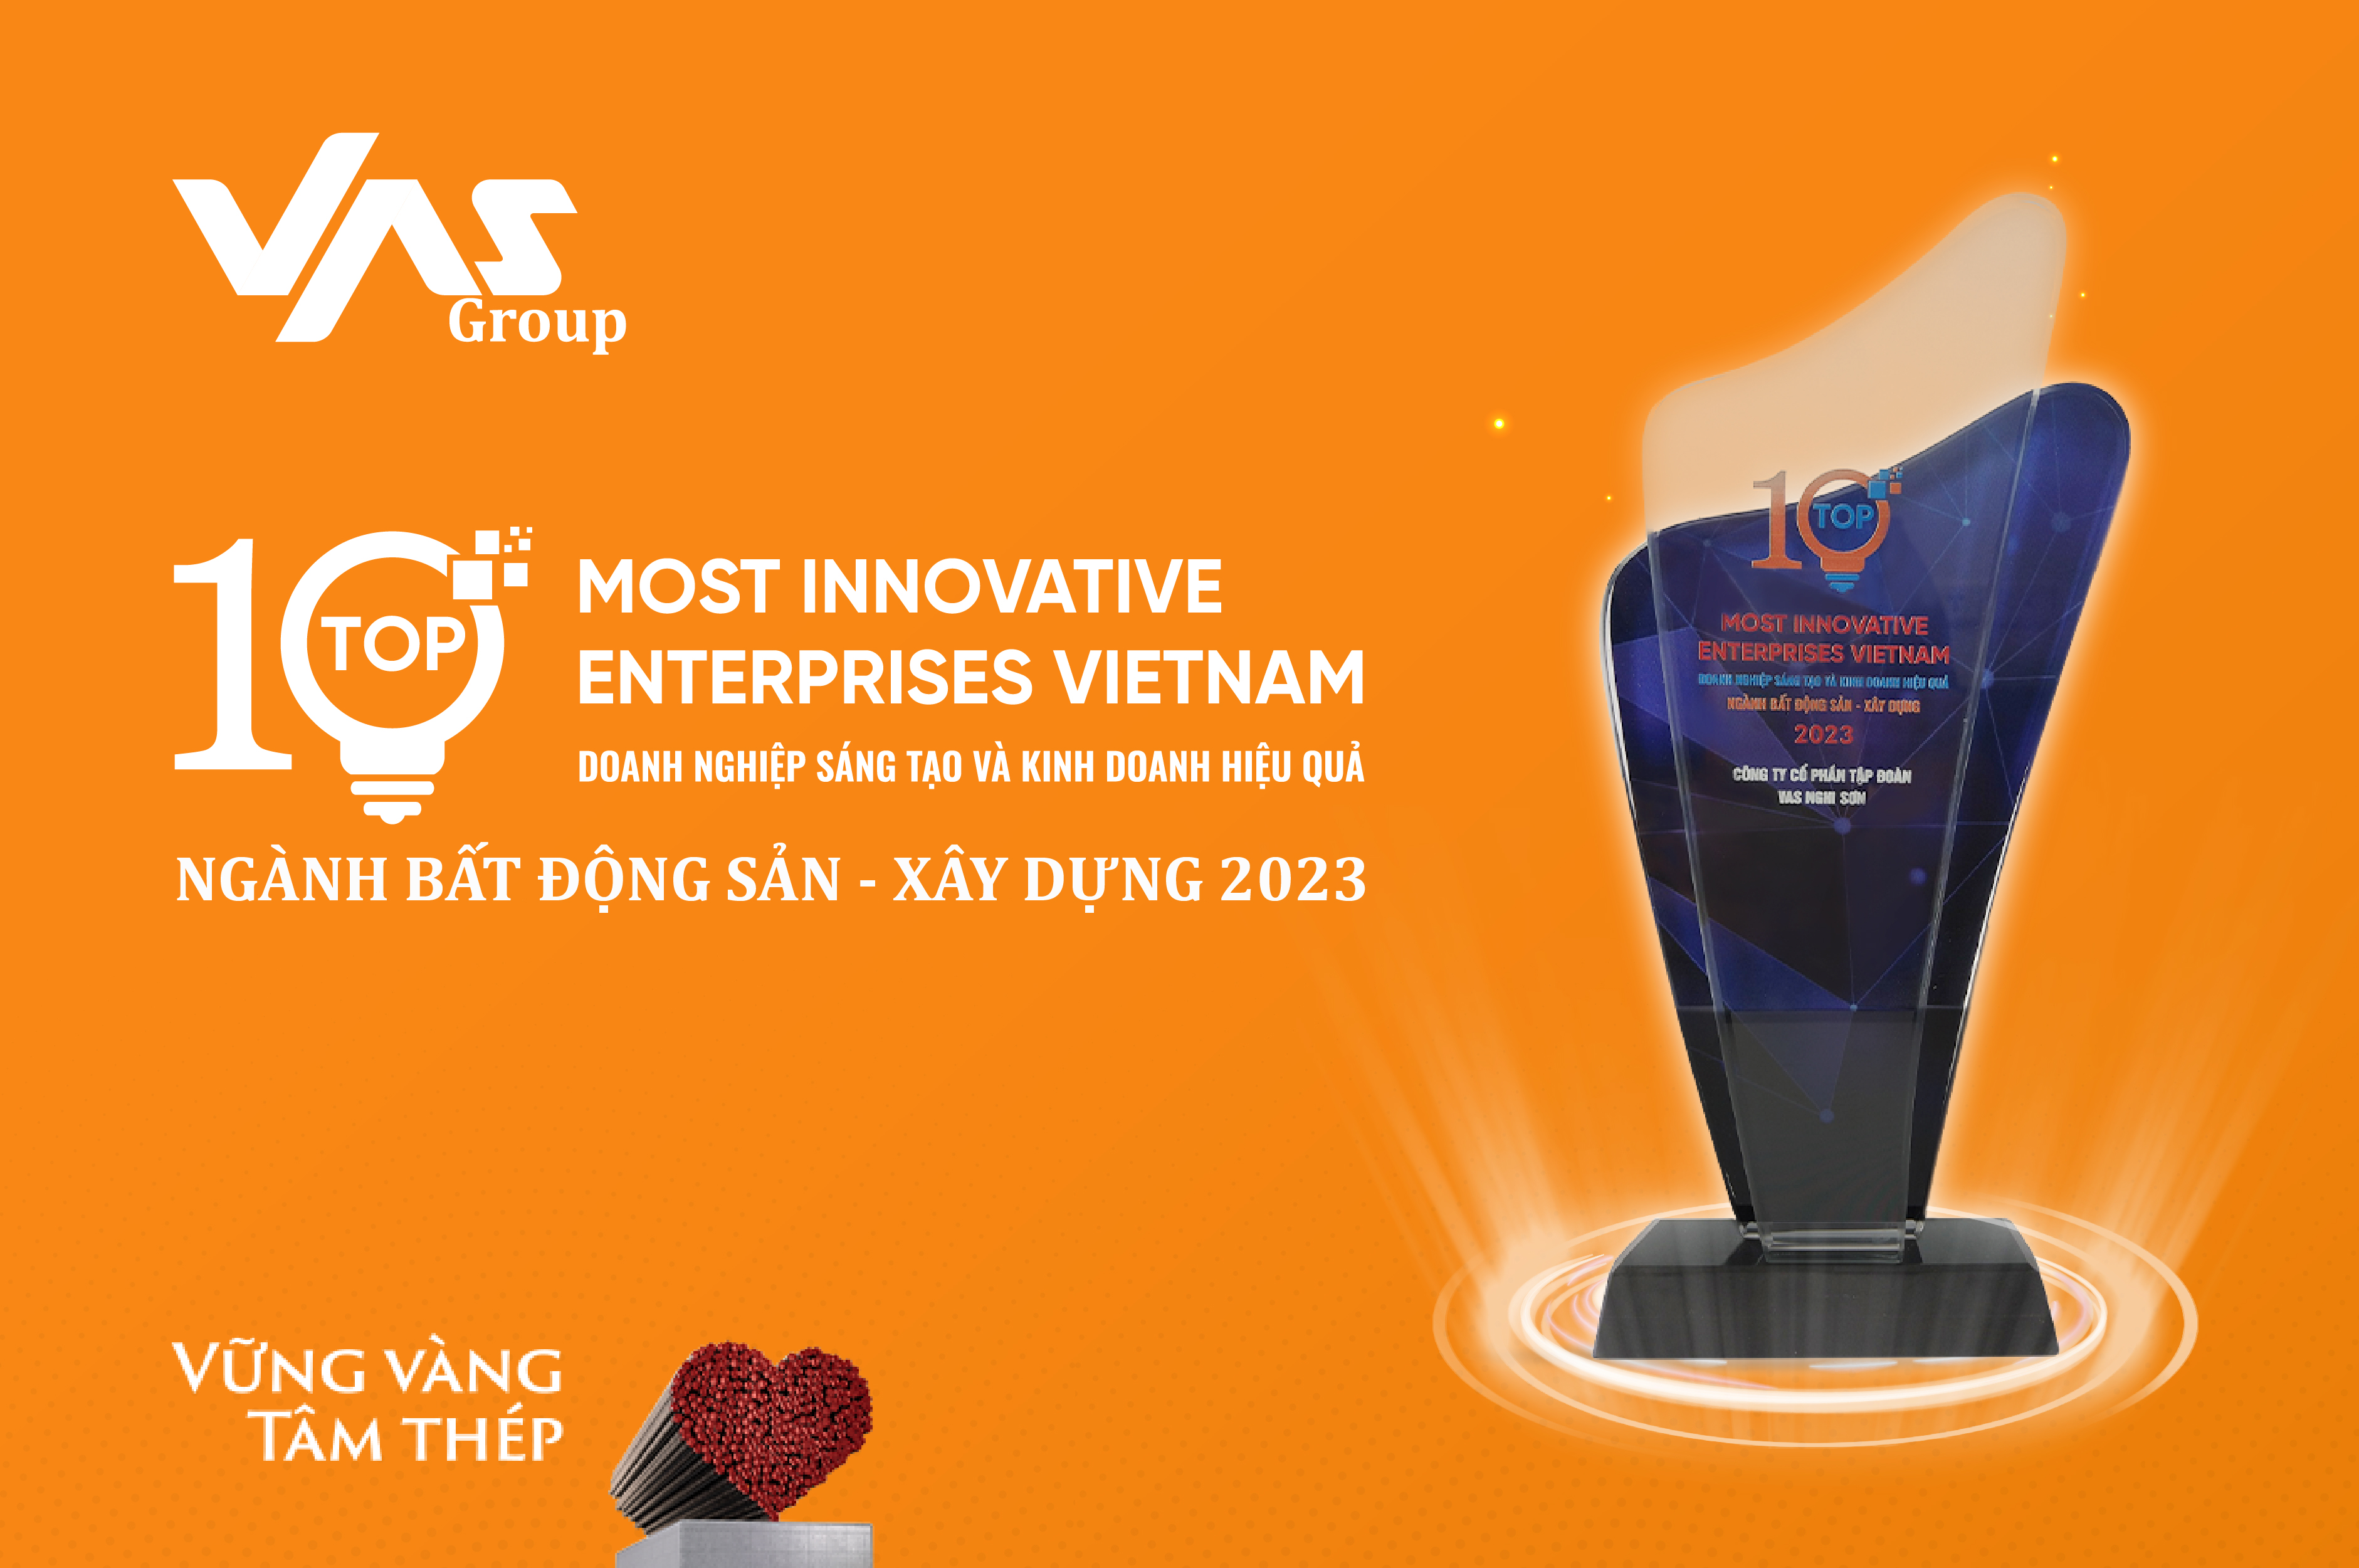 VAS Group đạt Top 10 Doanh nghiệp Sáng tạo và Kinh doanh hiệu quả Việt Nam 2023